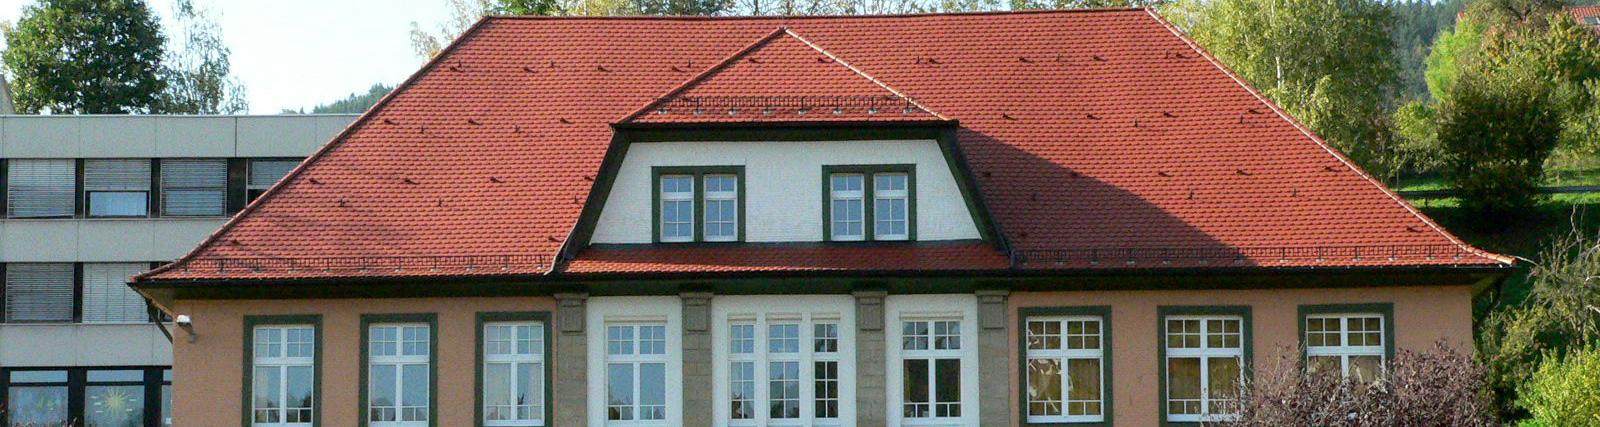 Johann-Belzer-Schule